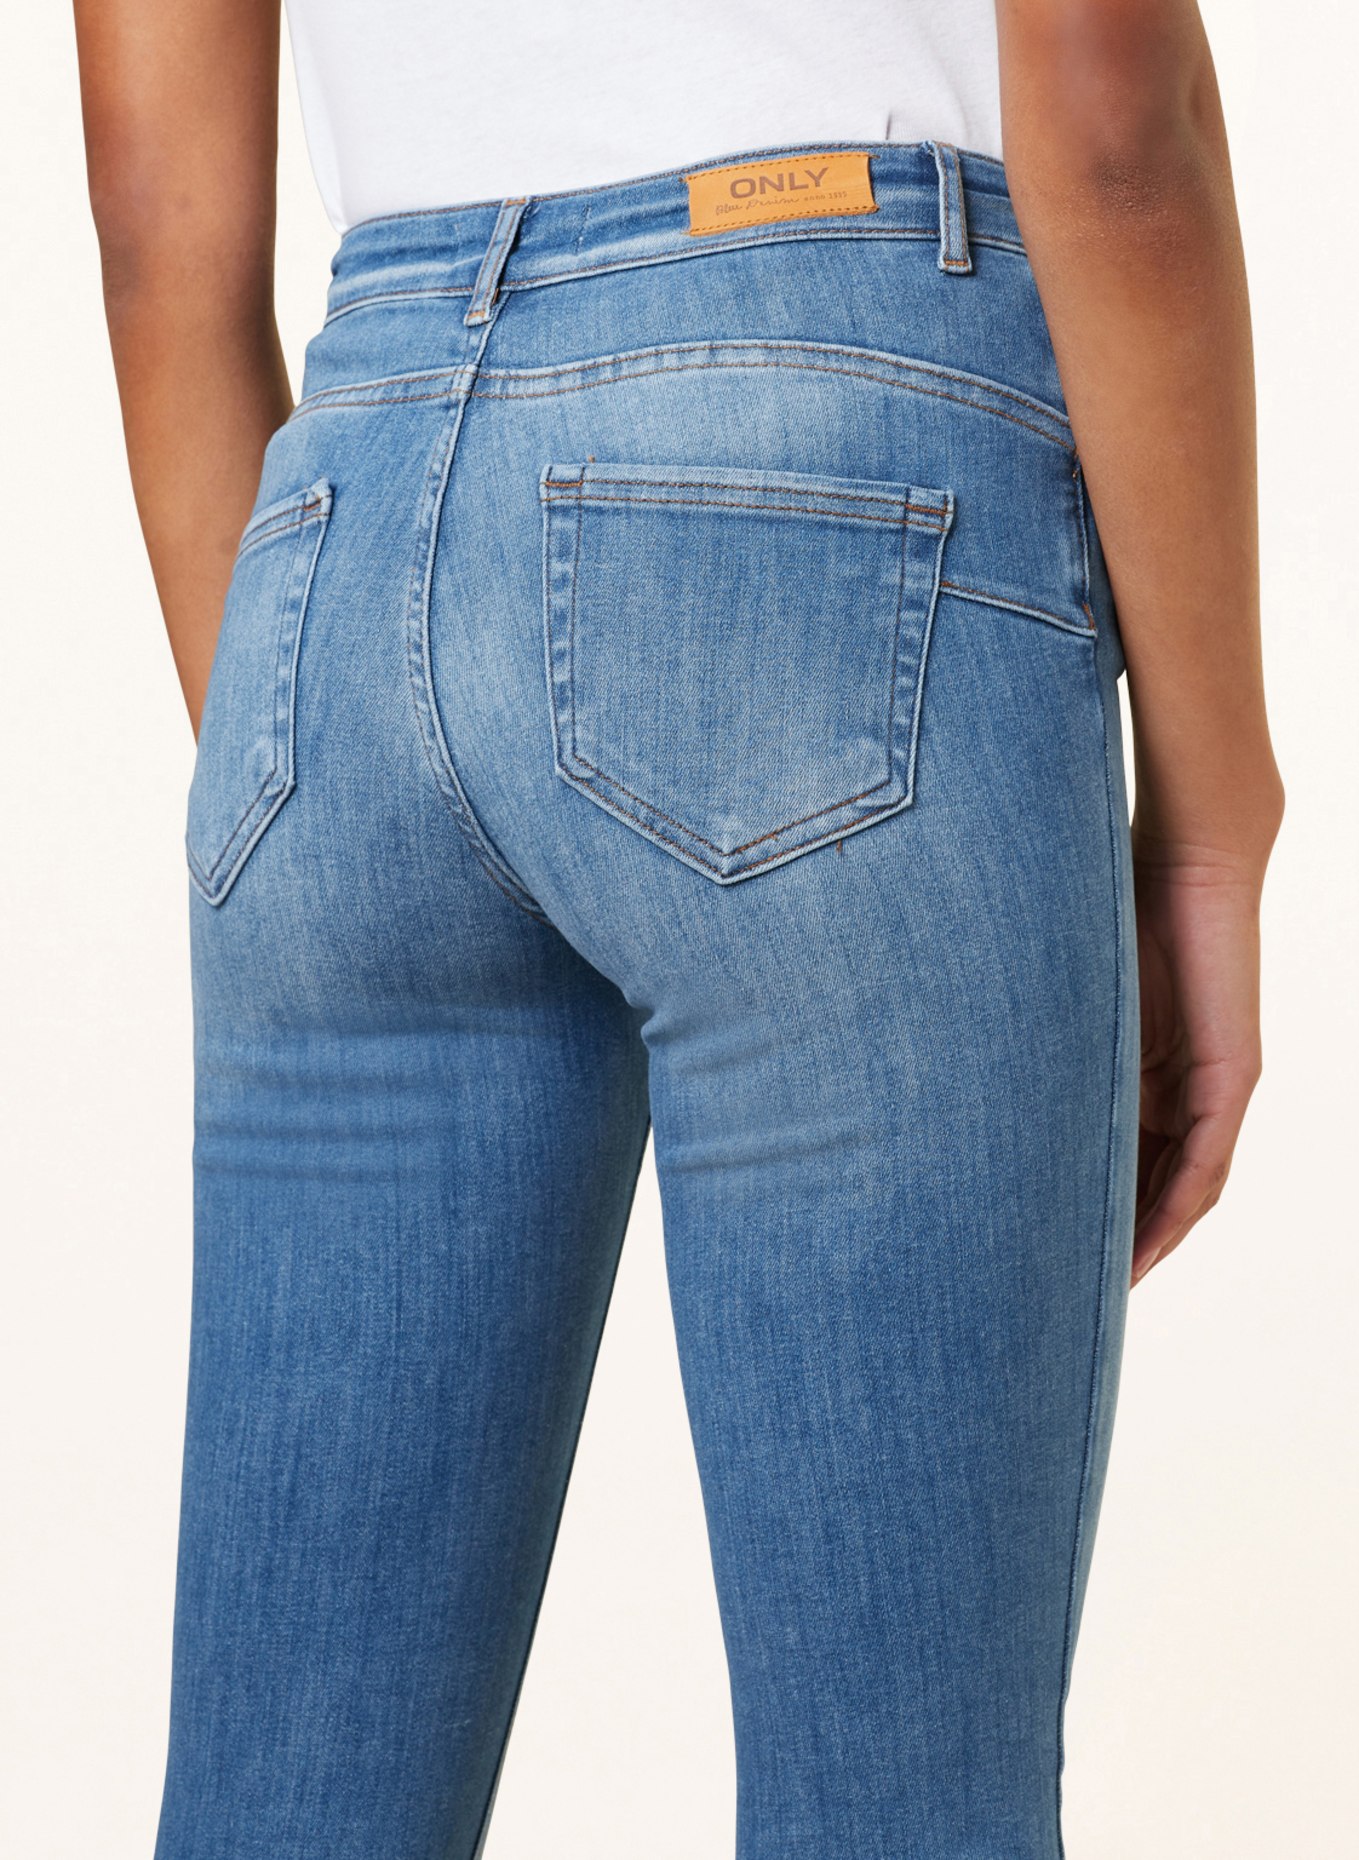 ONLY Skinny jeans, Color: LIGHT BLUE DENIM (Image 5)